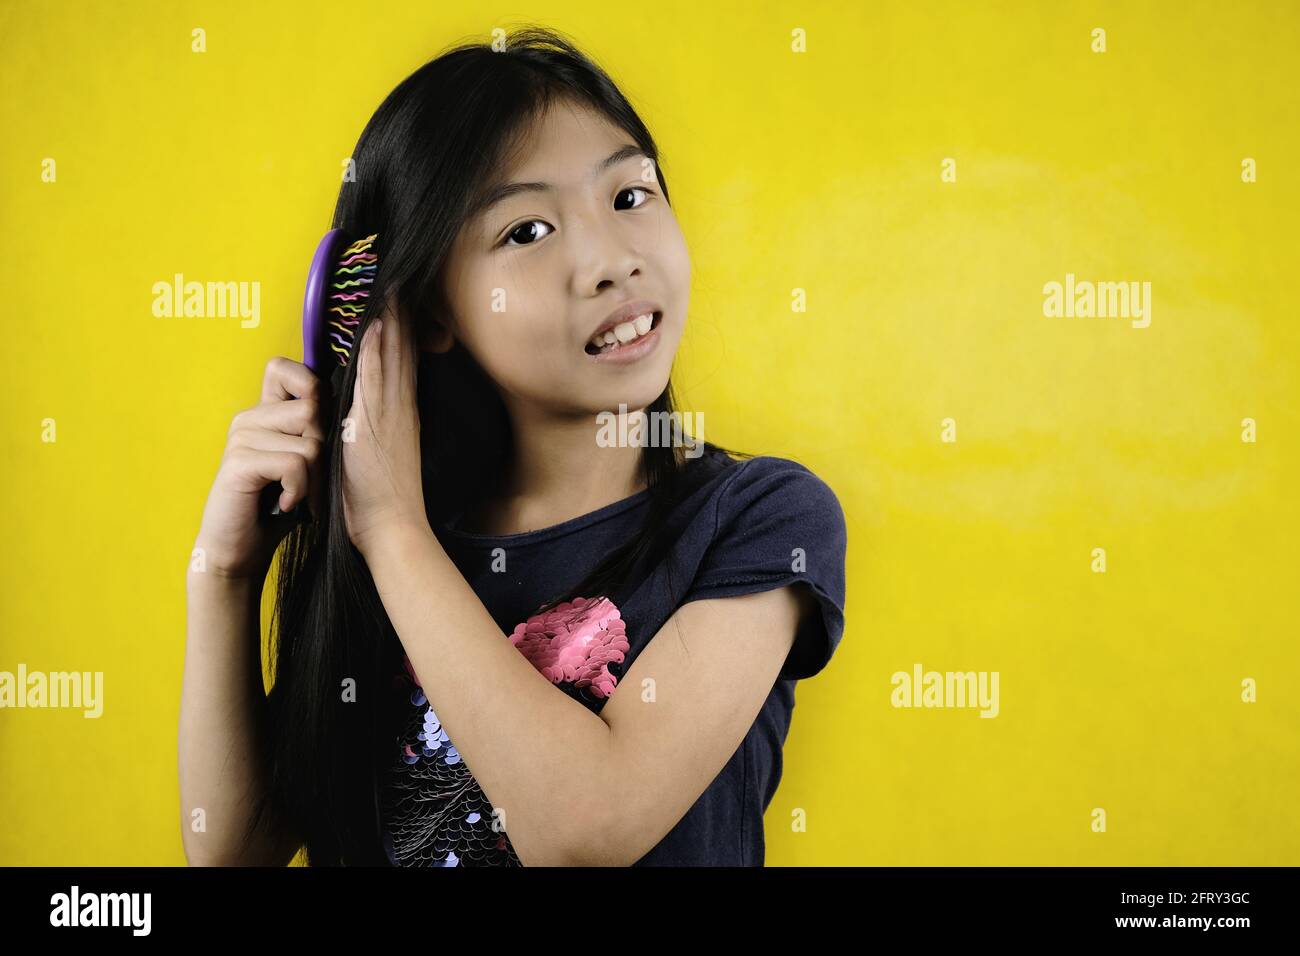 Une jeune fille asiatique mignonne ses beaux cheveux longs et foncés à l'aide d'un peigne après la douche, se sentent détendus et heureux, souriant. Arrière-plan jaune vif Banque D'Images